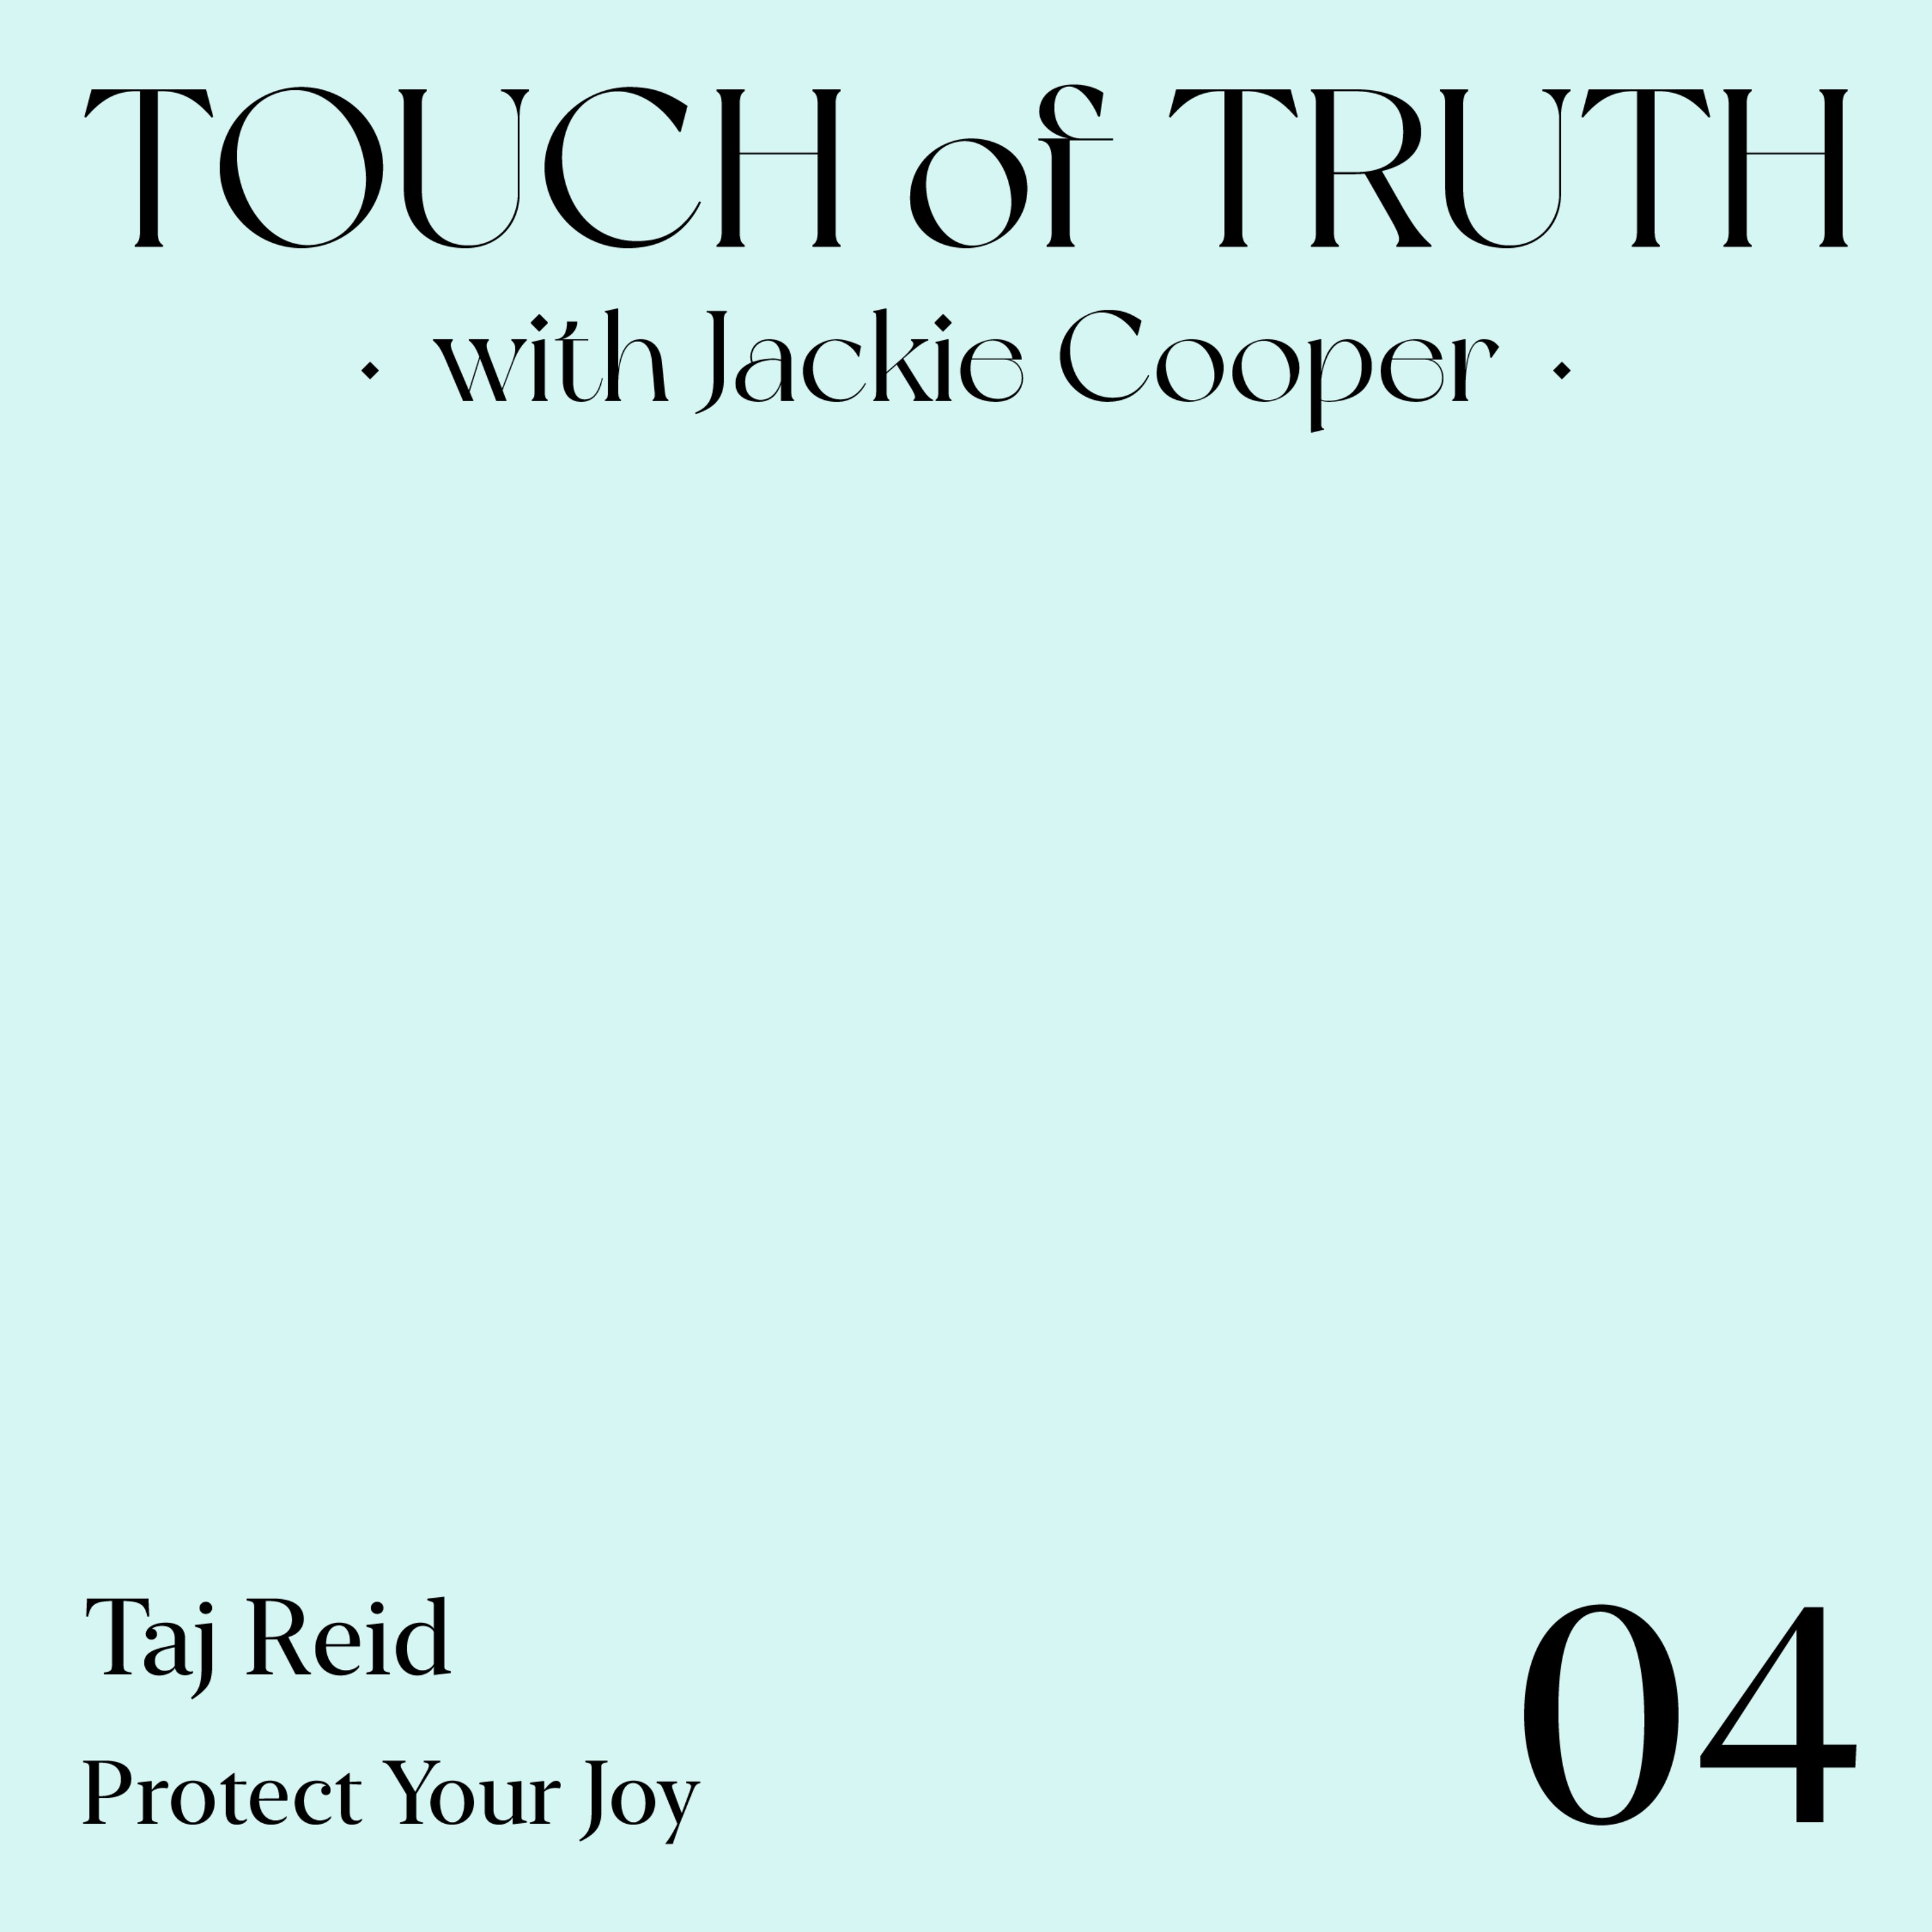 Protect Your Joy with Taj Reid